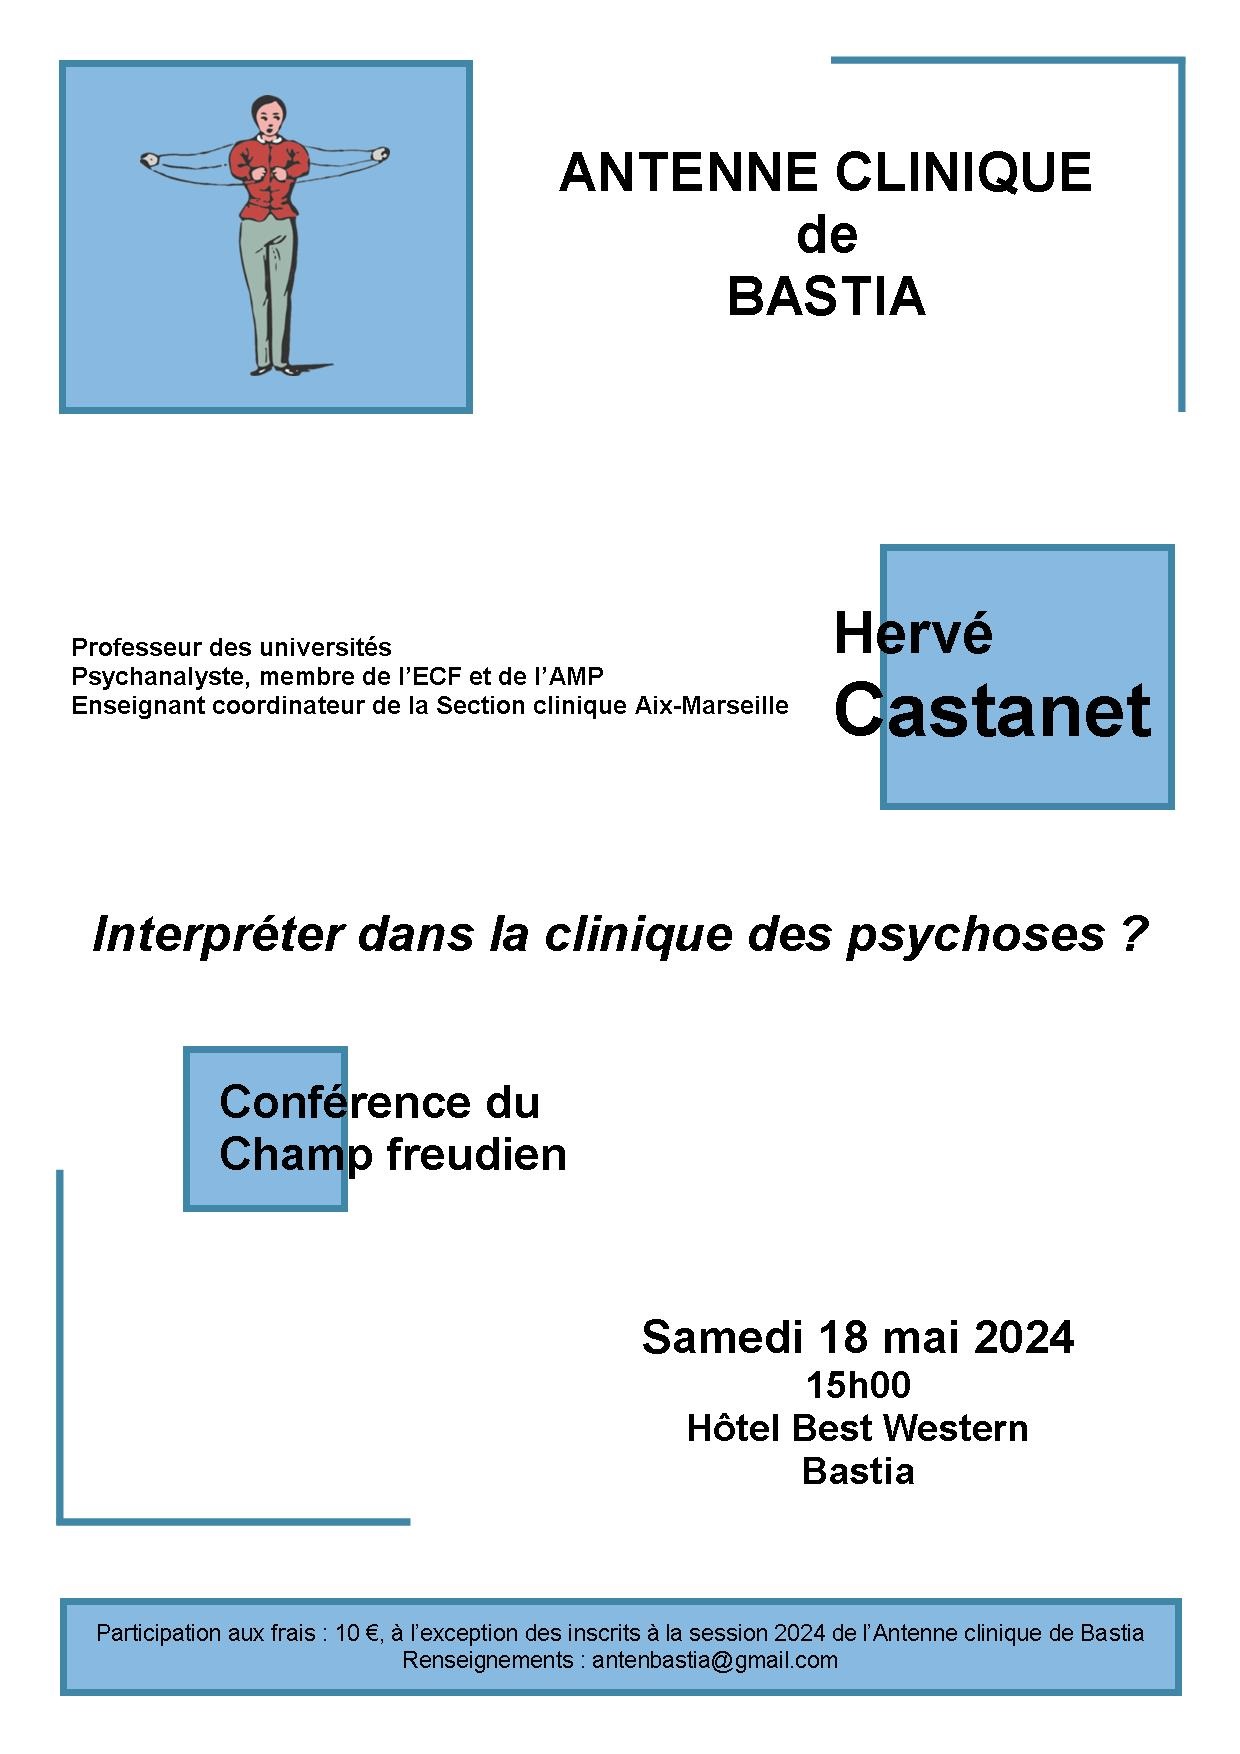 Conférence du Champ freudien – H. Castanet – 18 mai 2024